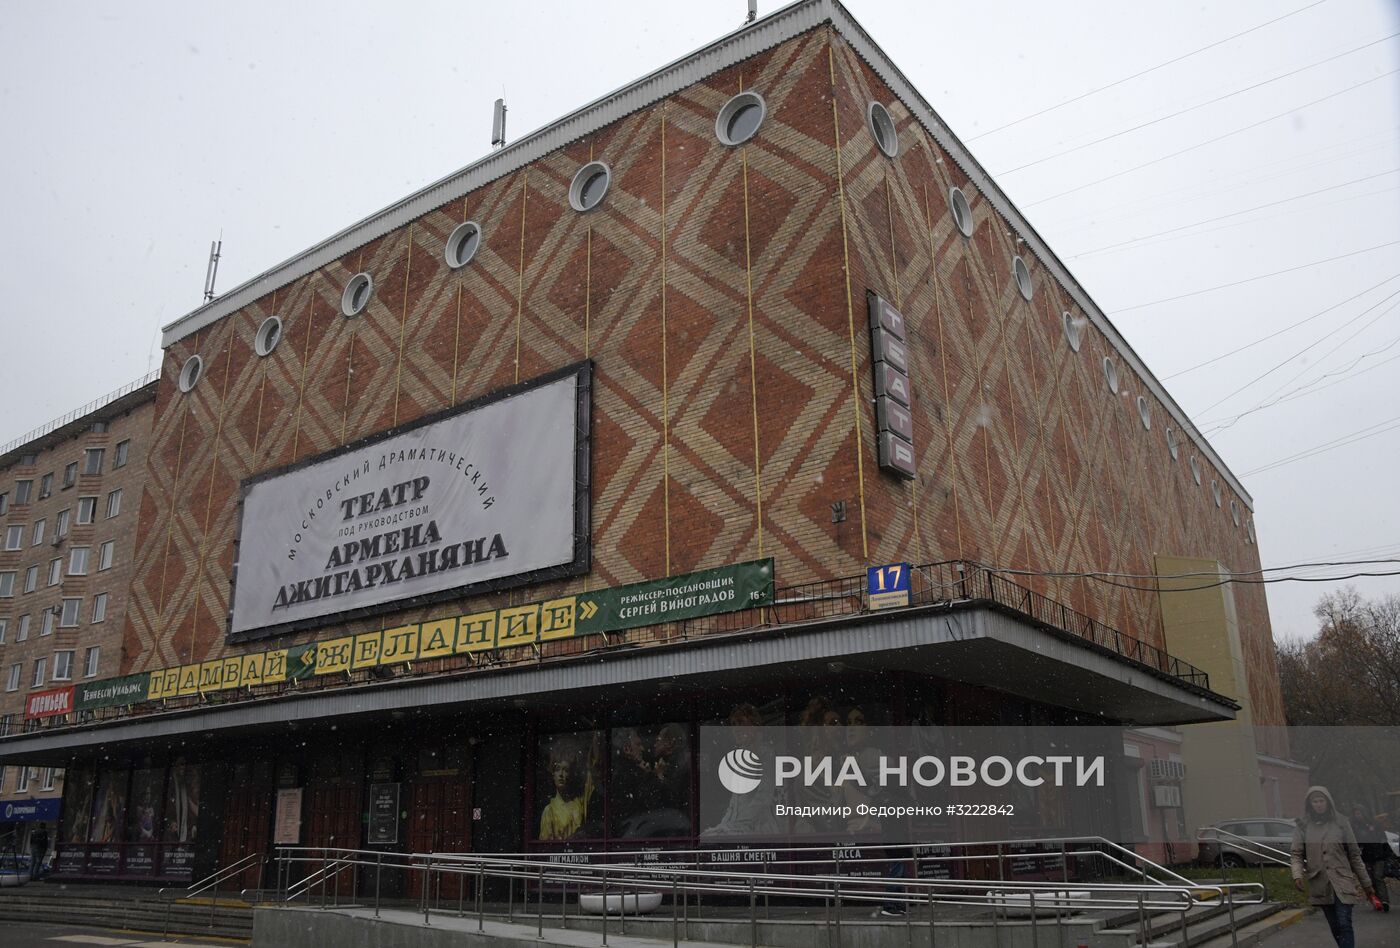 Здание Московского драматического театра под руководством Армена Джигарханяна